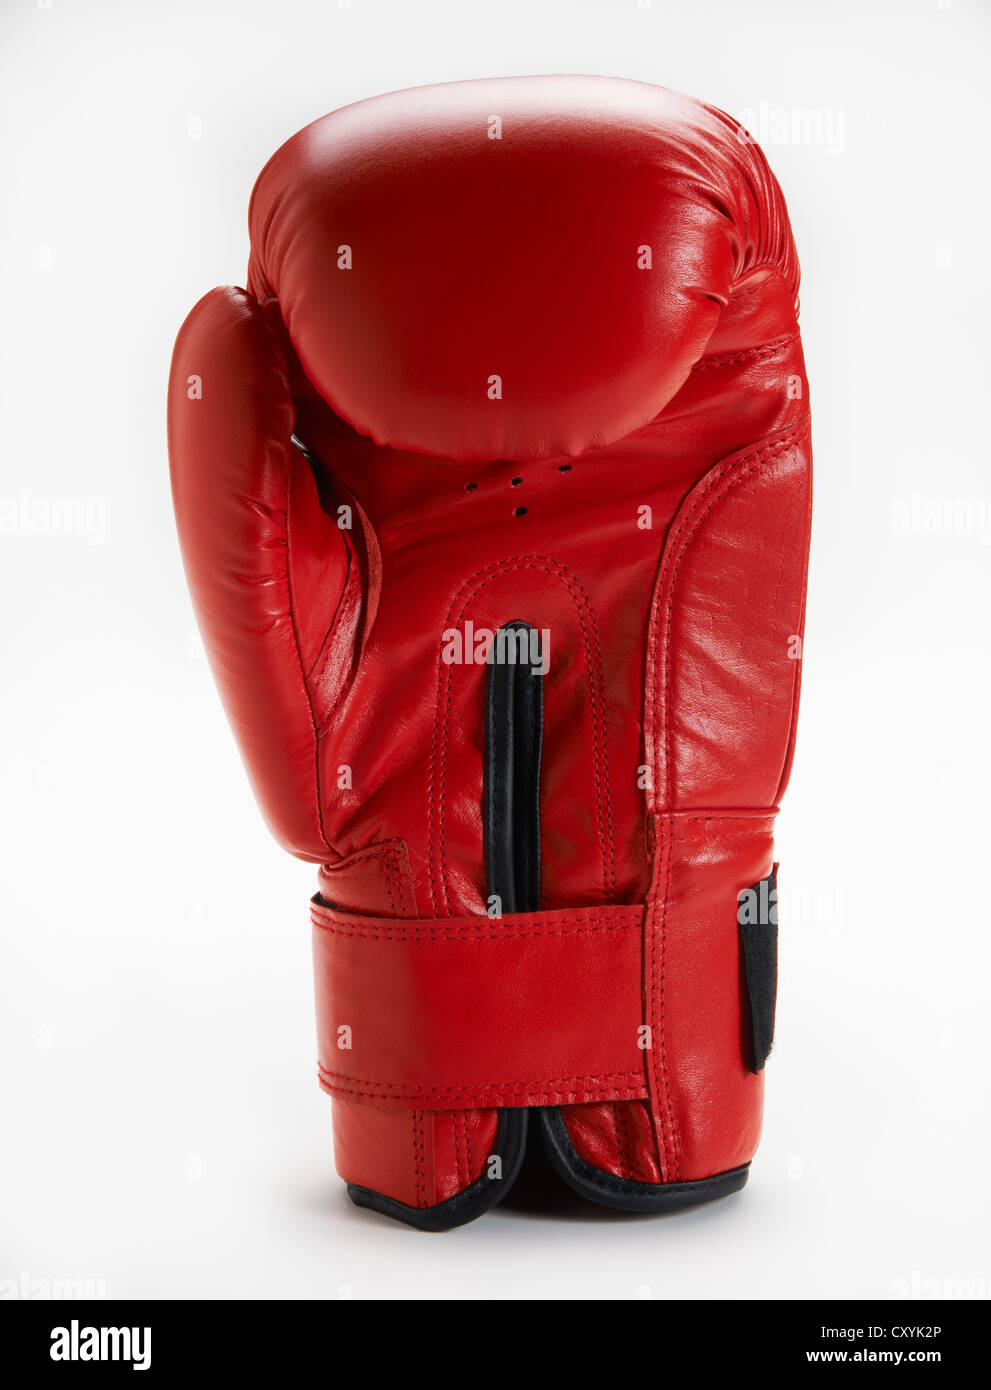 Rote Boxhandschuh stehend auf weißem Hintergrund Stockfoto